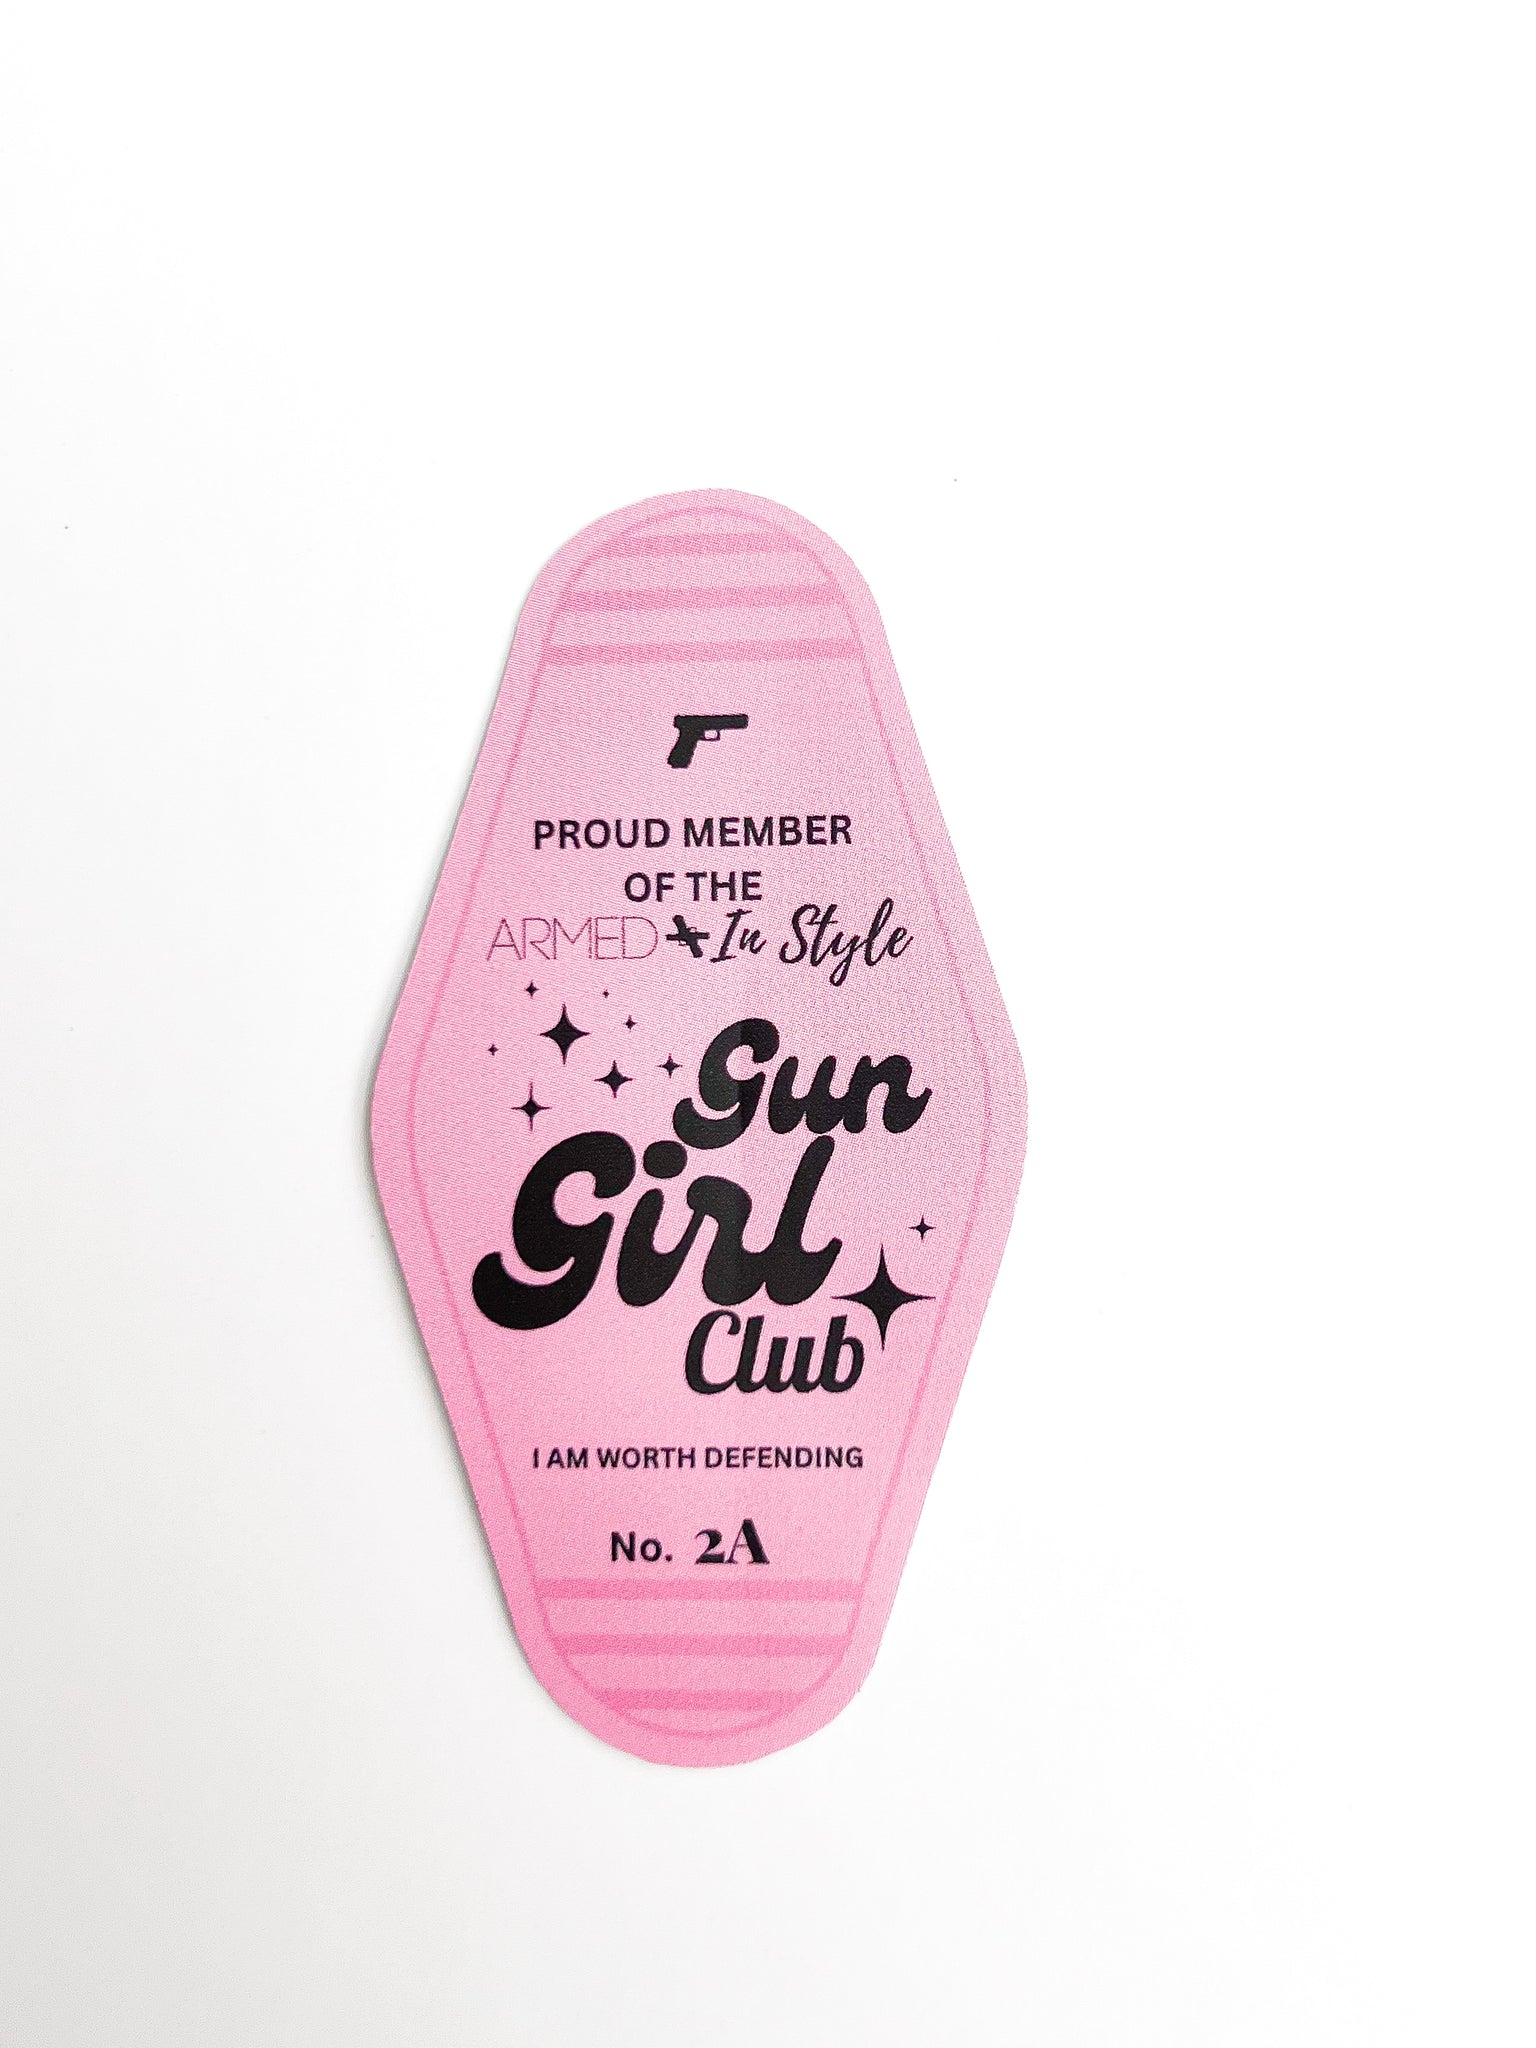 Gun Girl Club Member Sticker